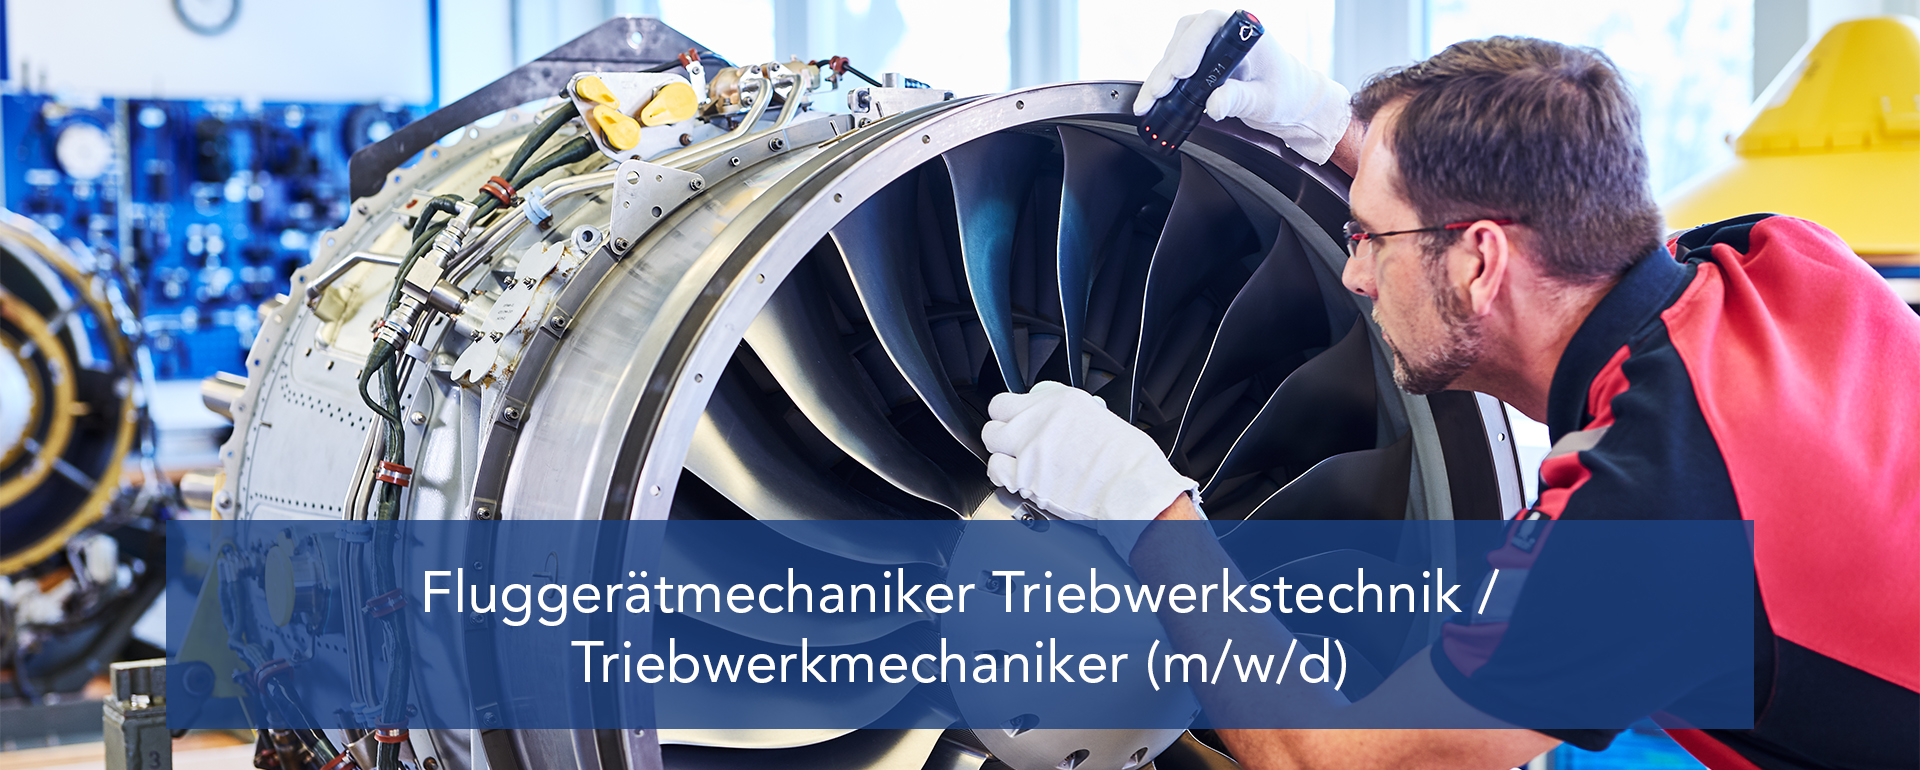 Fluggerätmechaniker Triebwerkstechnik / Triebwerkmechaniker (m/w/d)